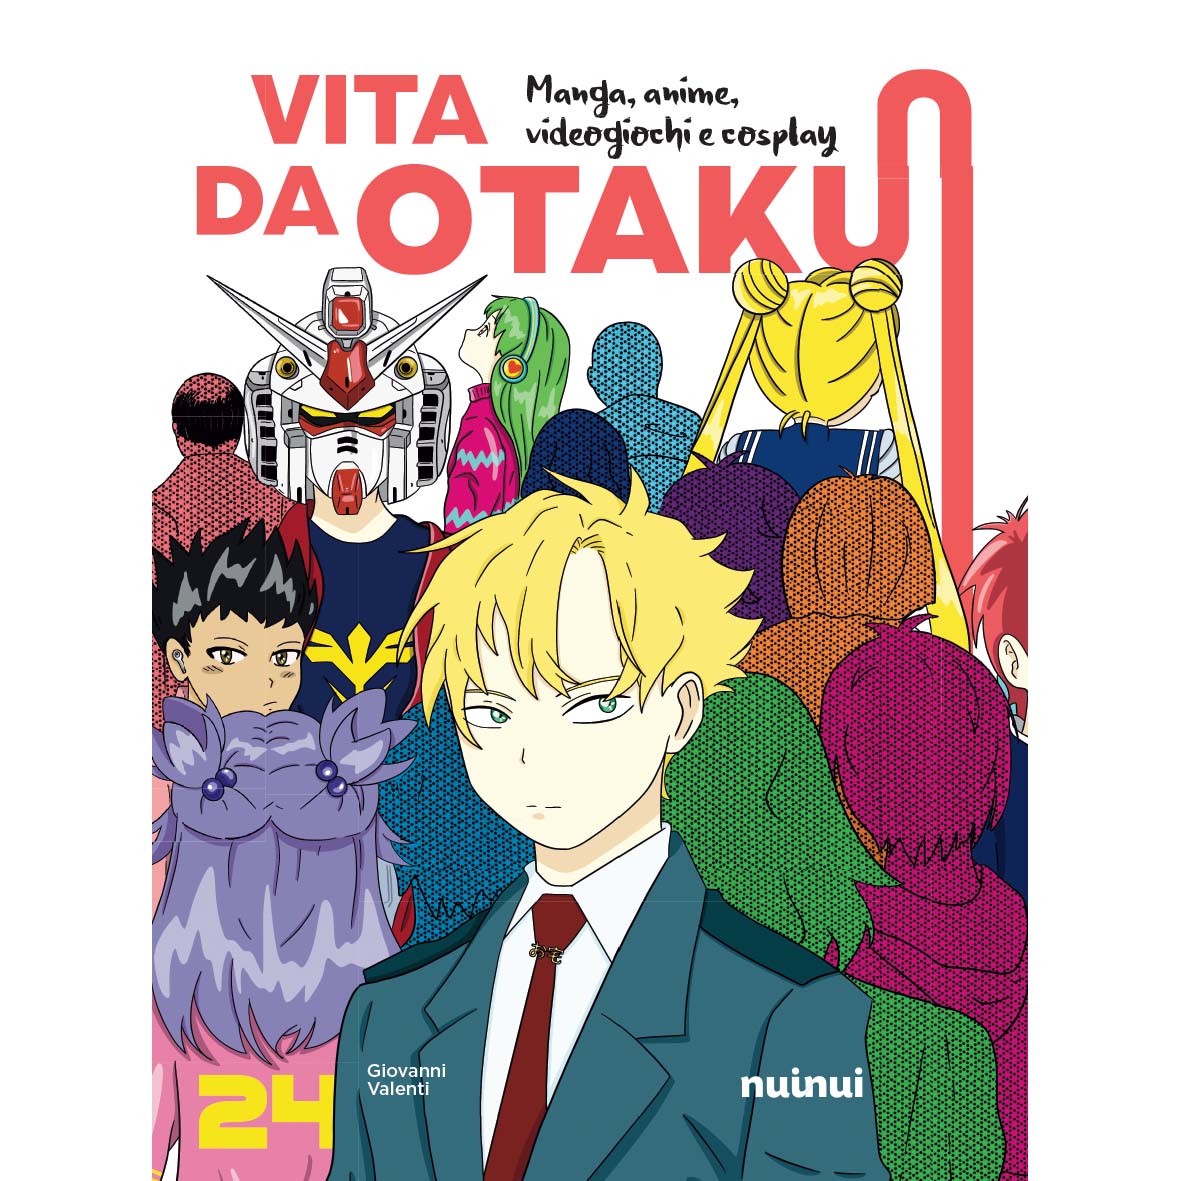 Vita da otaku - Manga, anime, videogiochi e cosplay